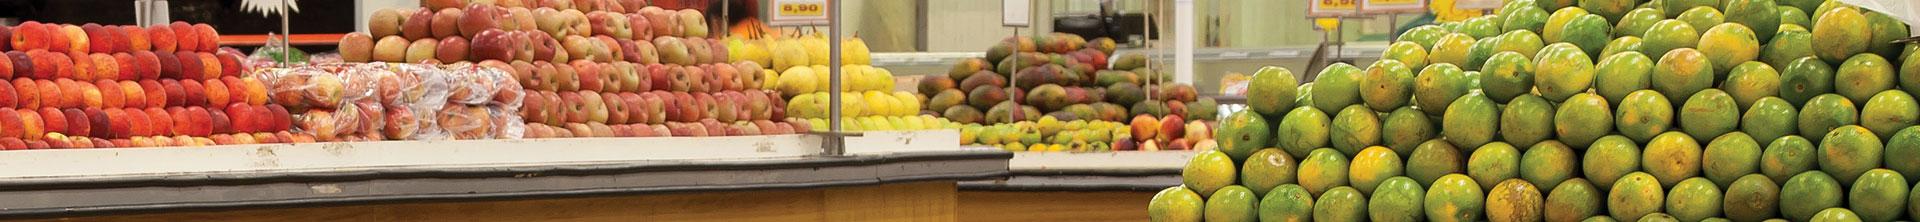 Fruits dans une épicerie